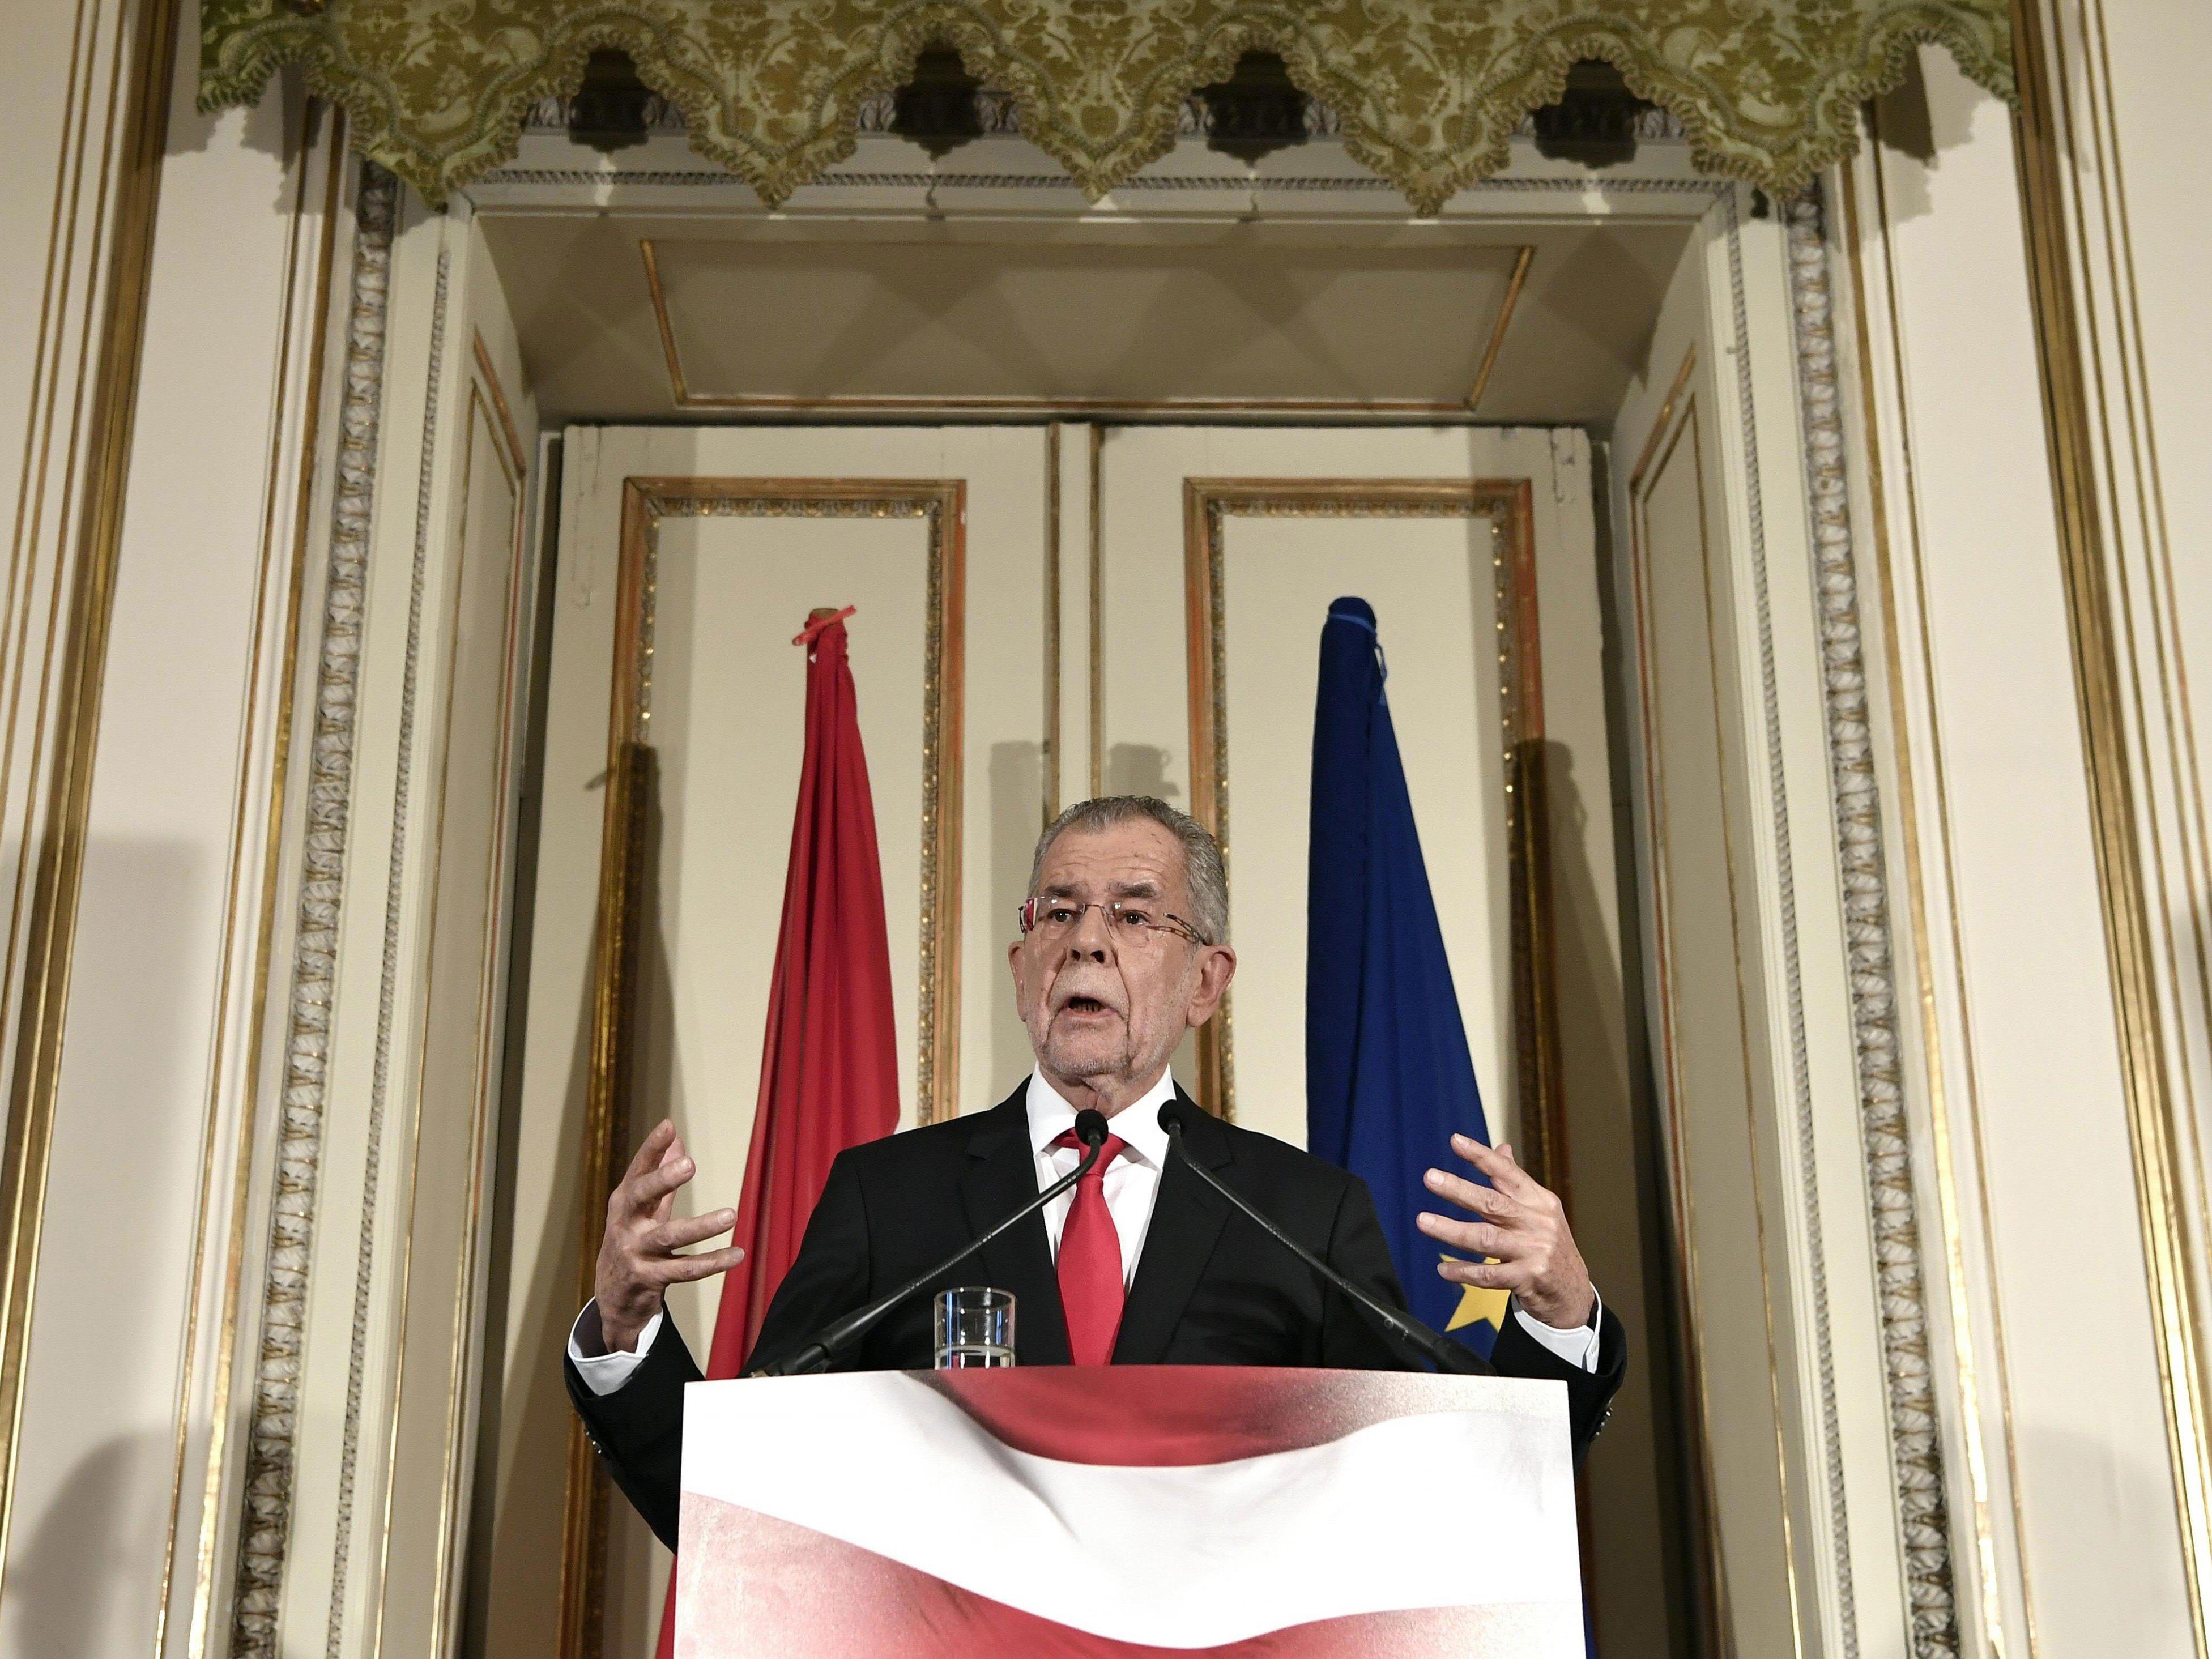 Der designierte Bundespräsident Alexander Van der Bellen bei seiner Rede in Wien